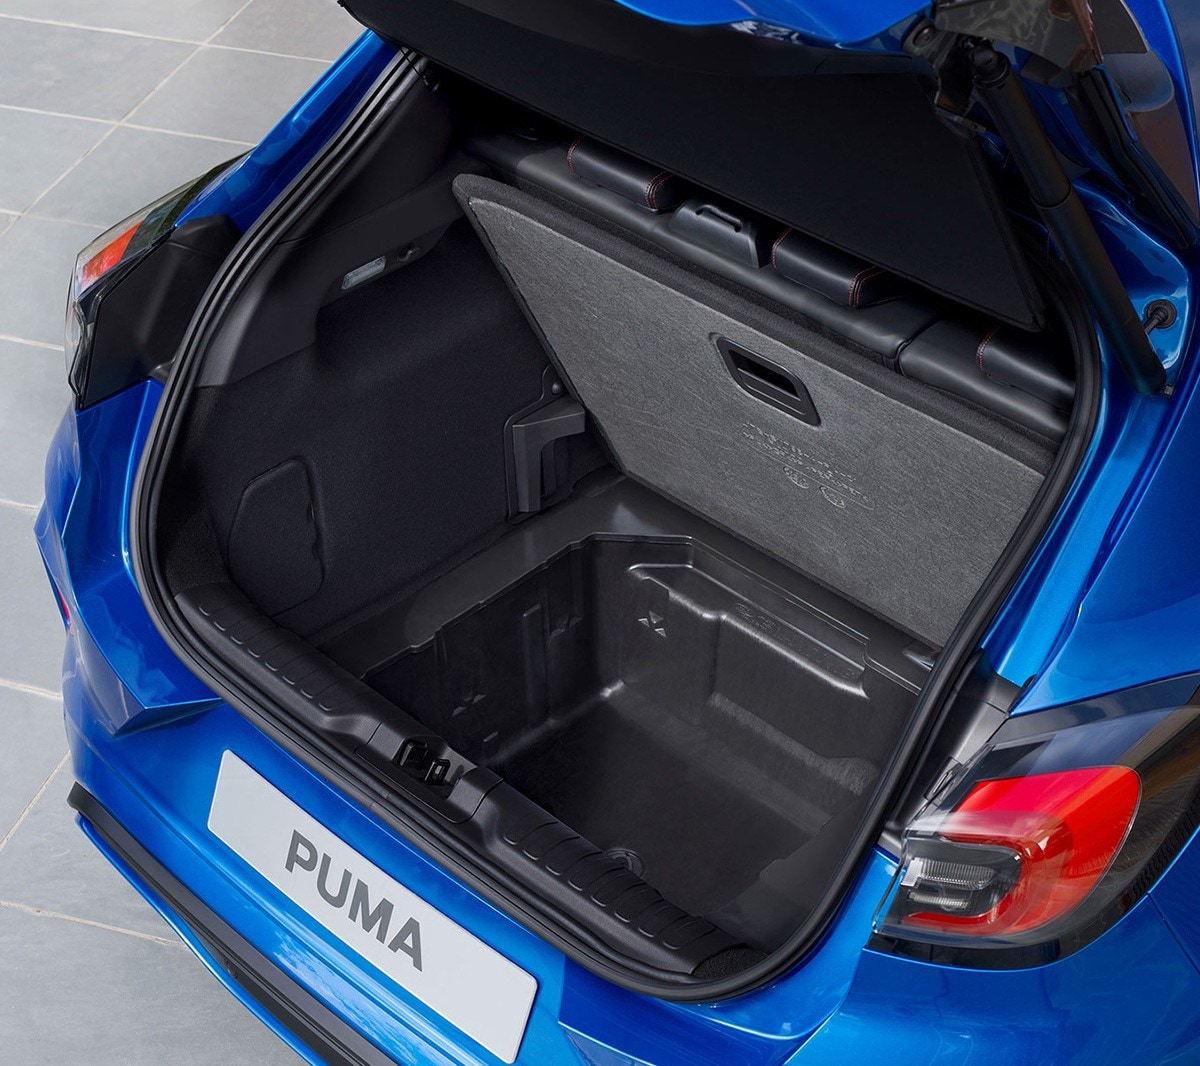 Vue arrière du Ford Puma bleu avec le coffre ouvert